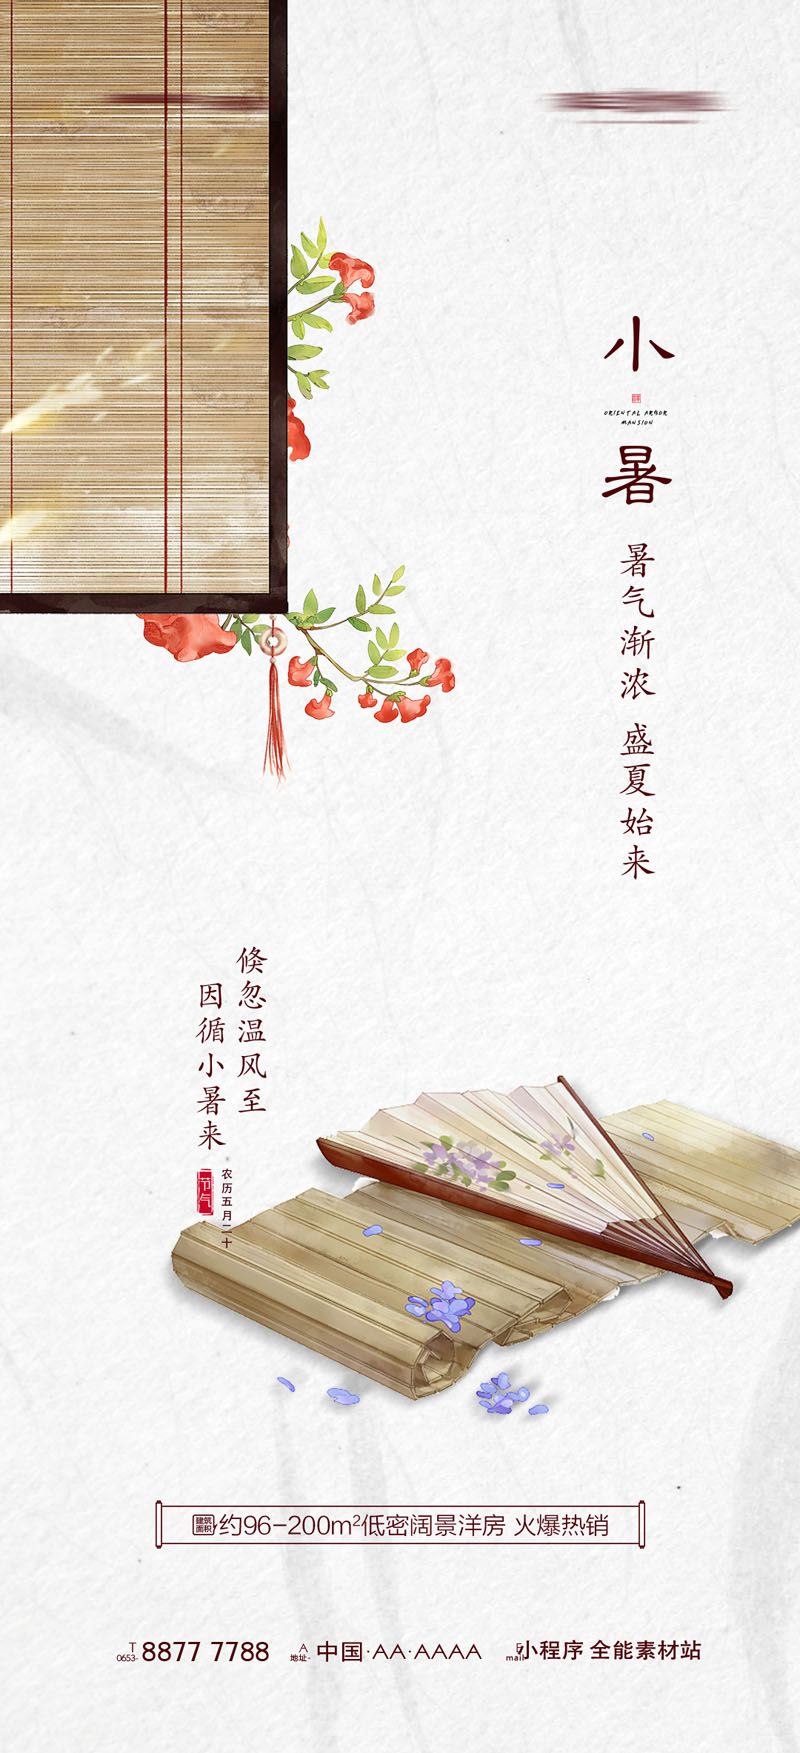 93款中国风24节气小暑宣传海报PSD模板 设计素材 第9张